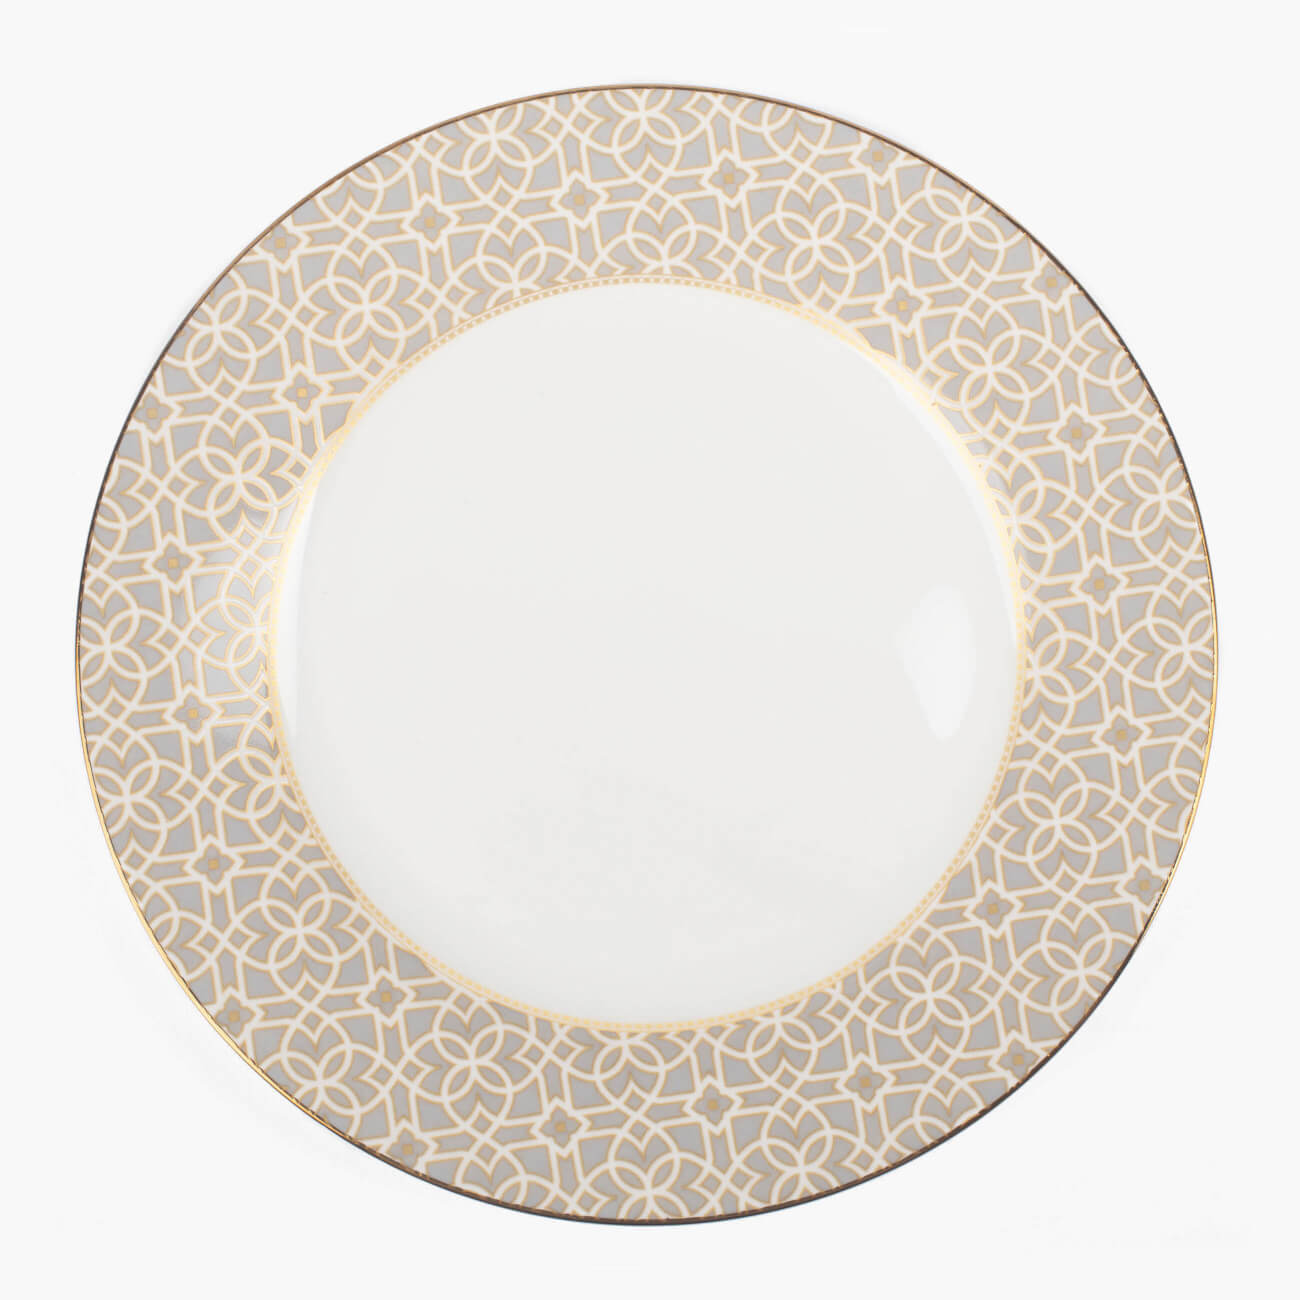 Тарелка десертная, 19 см, фарфор F, серая, с золотистым кантом, Орнамент, Liberty тарелка десертная porcel ethereal moka